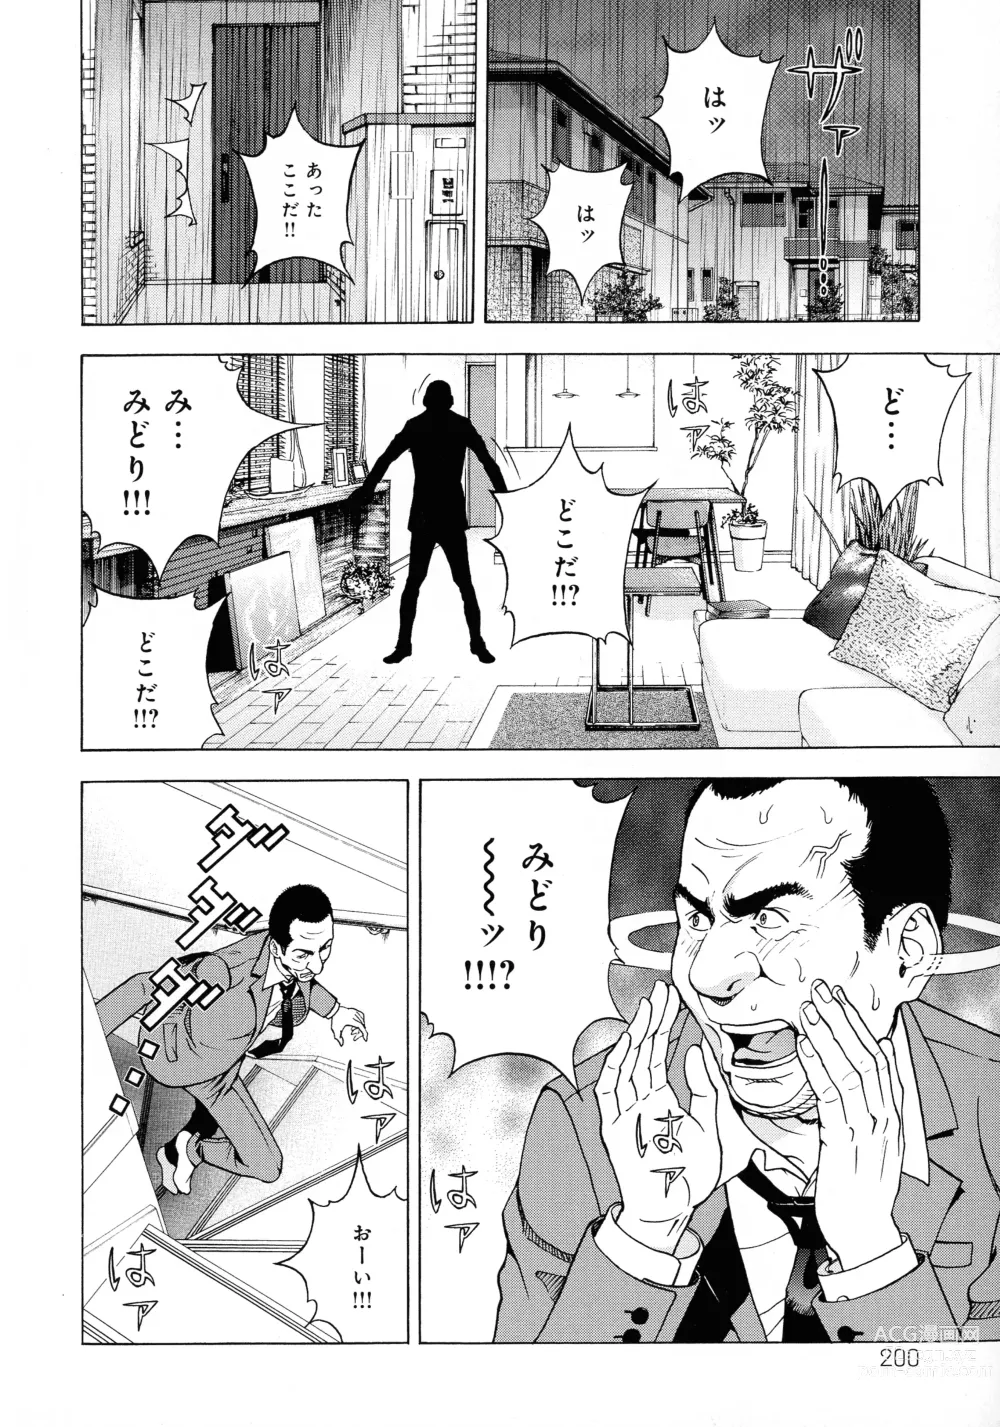 Page 193 of manga Bokinbako 2